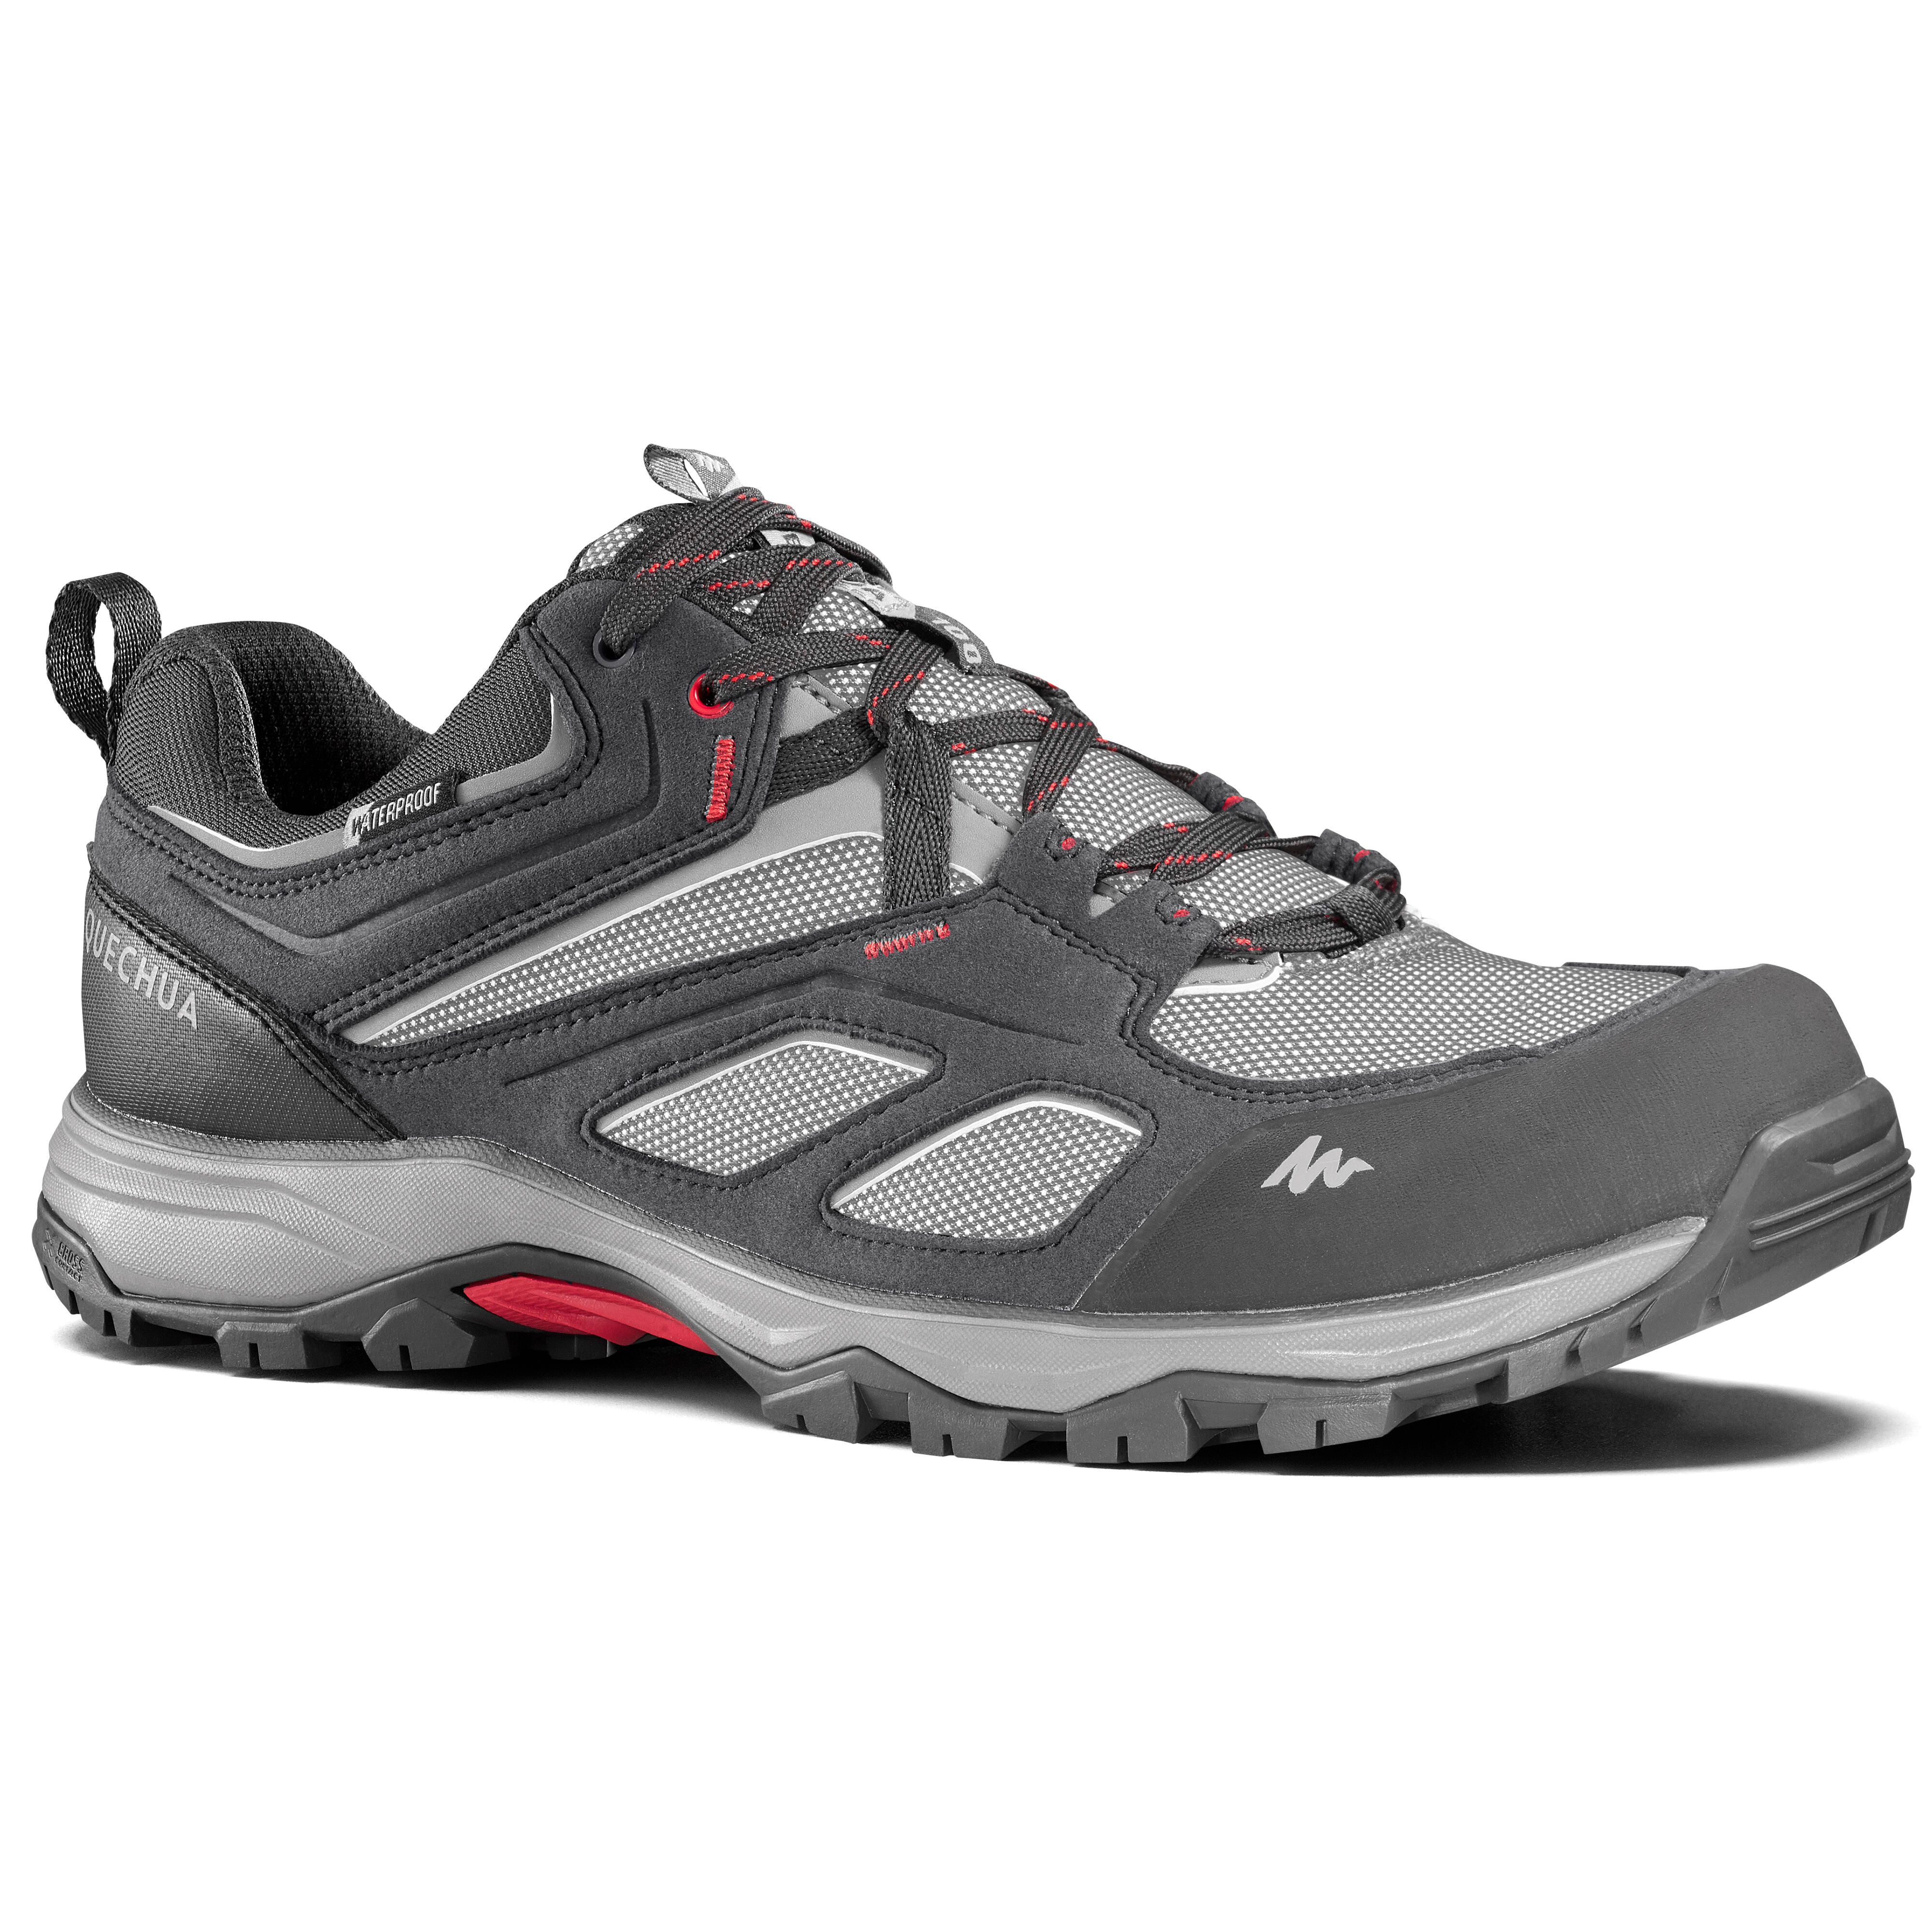 QUECHUA Chaussures imperméables de randonnée montagne - MH100 Gris - Homme - QUECHUA - 44